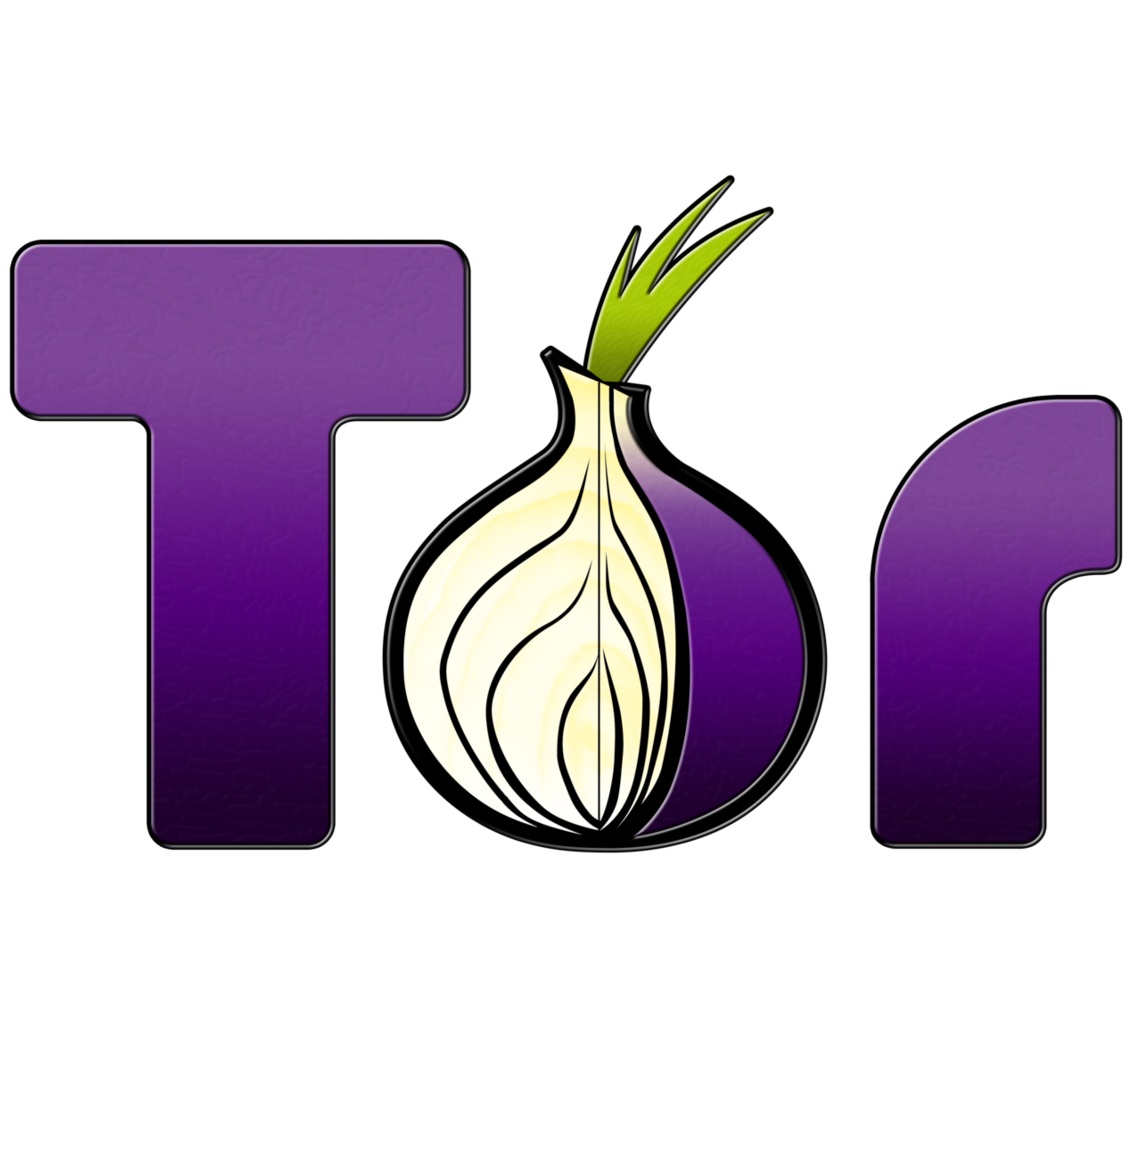 Tor иска да стане по-независим от САЩ, за да продължи да предлага високи нива на анонимност